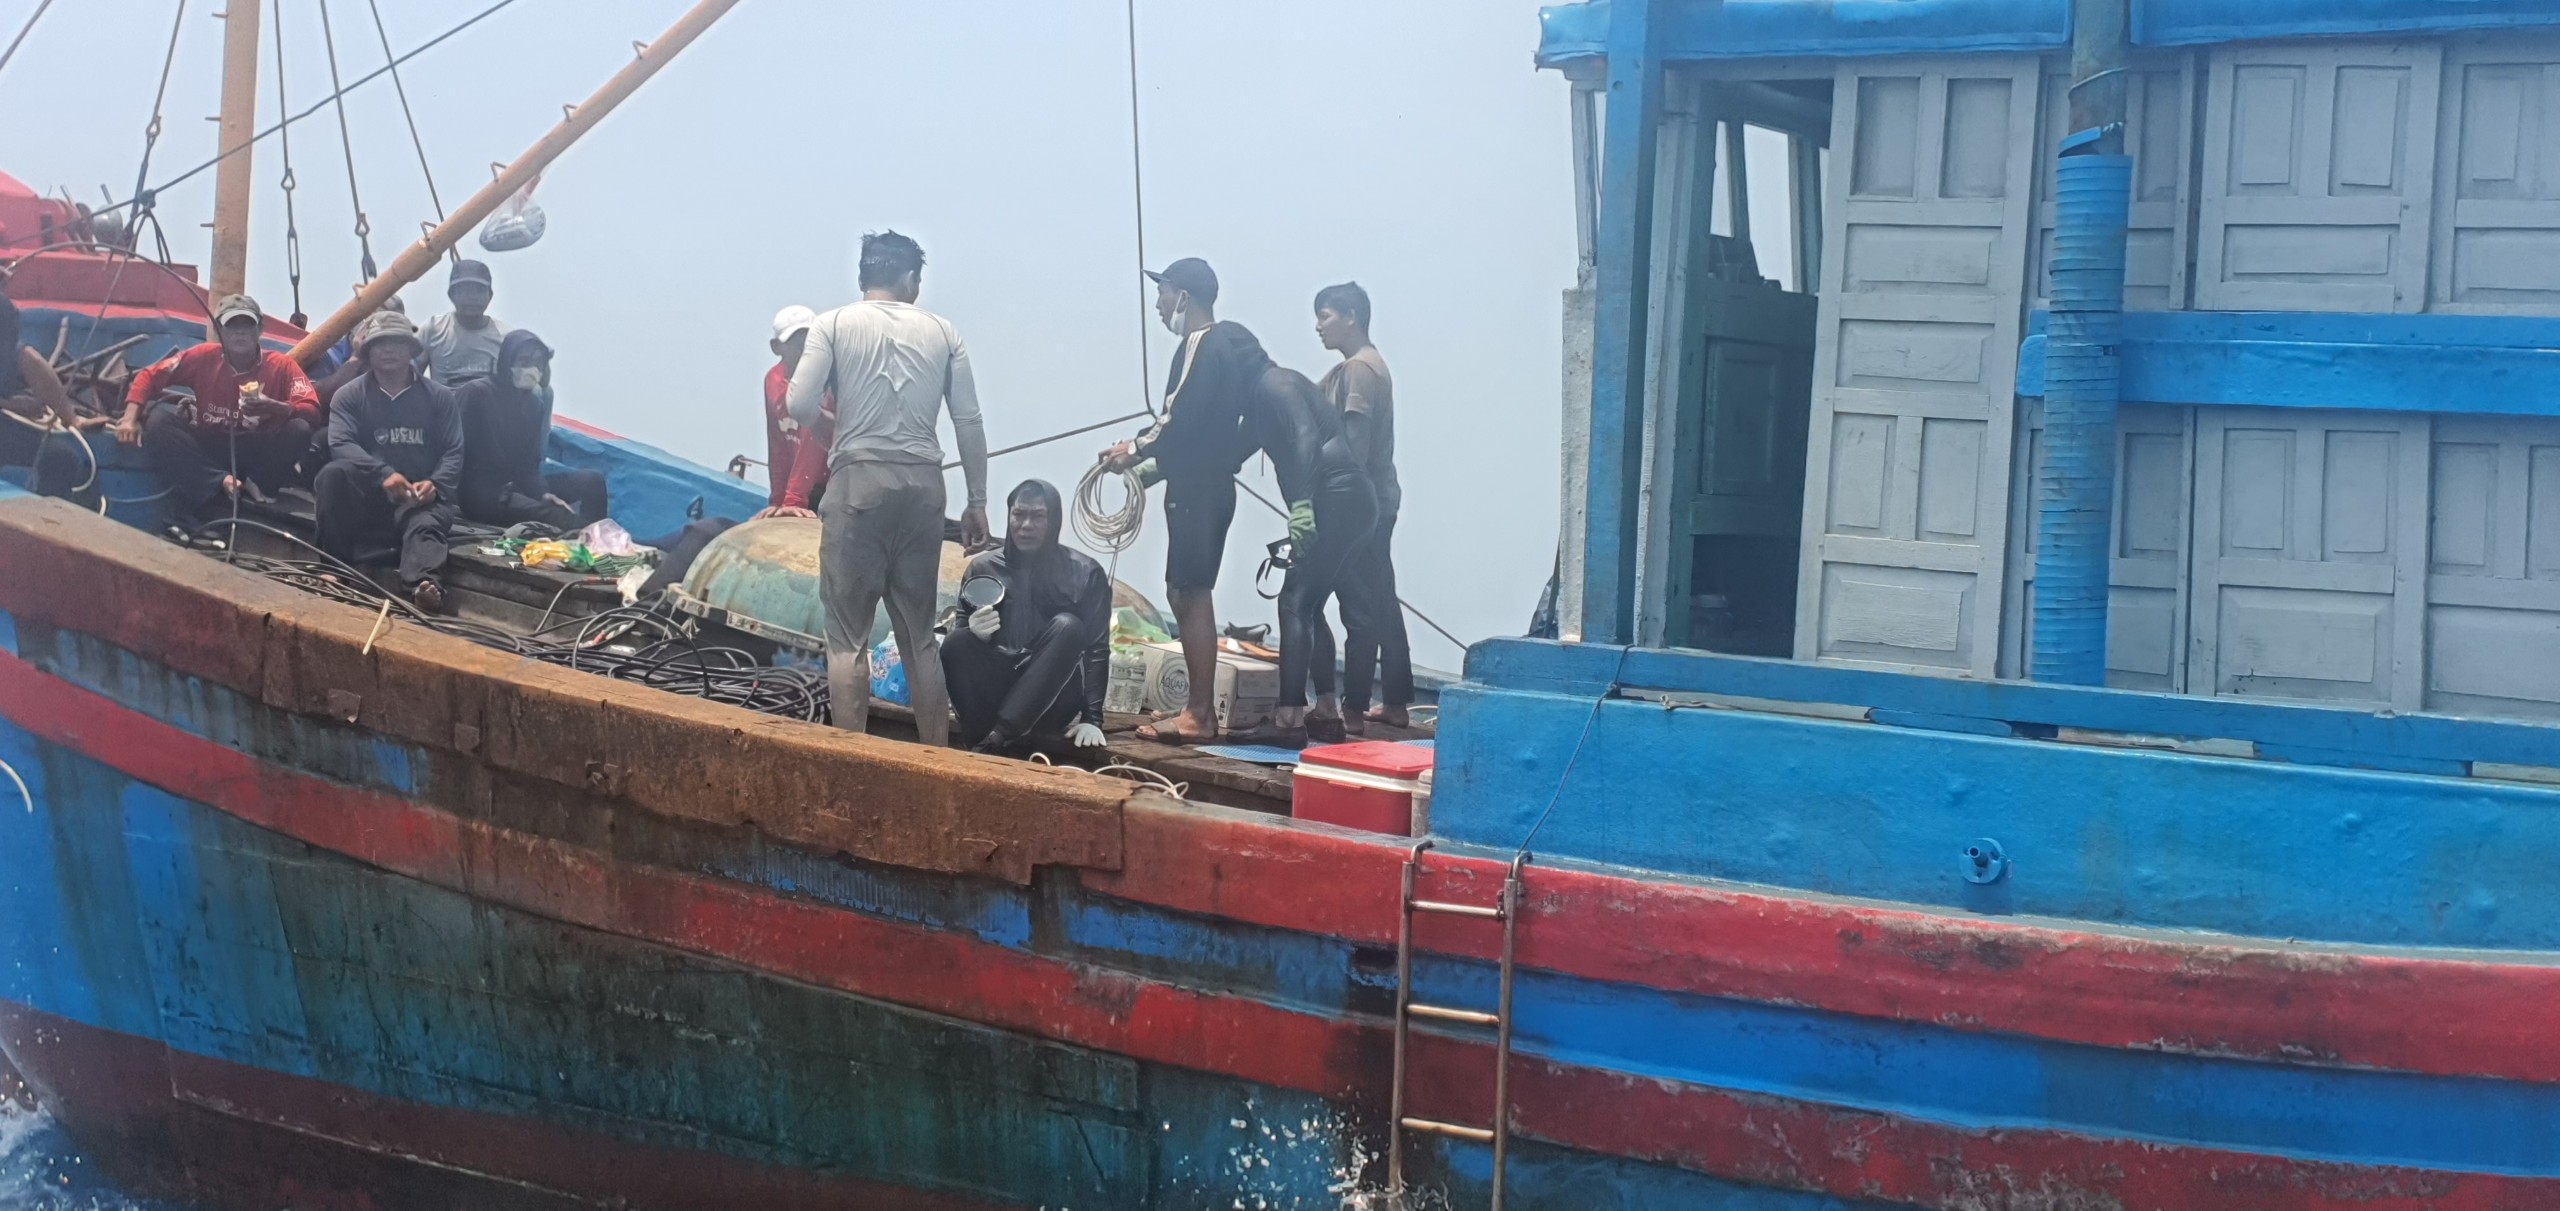 Vụ chìm sà lan ở Quảng Ngãi: Huy động đội thợ lặn chuyên nghiệp tìm kiếm- Ảnh 2.